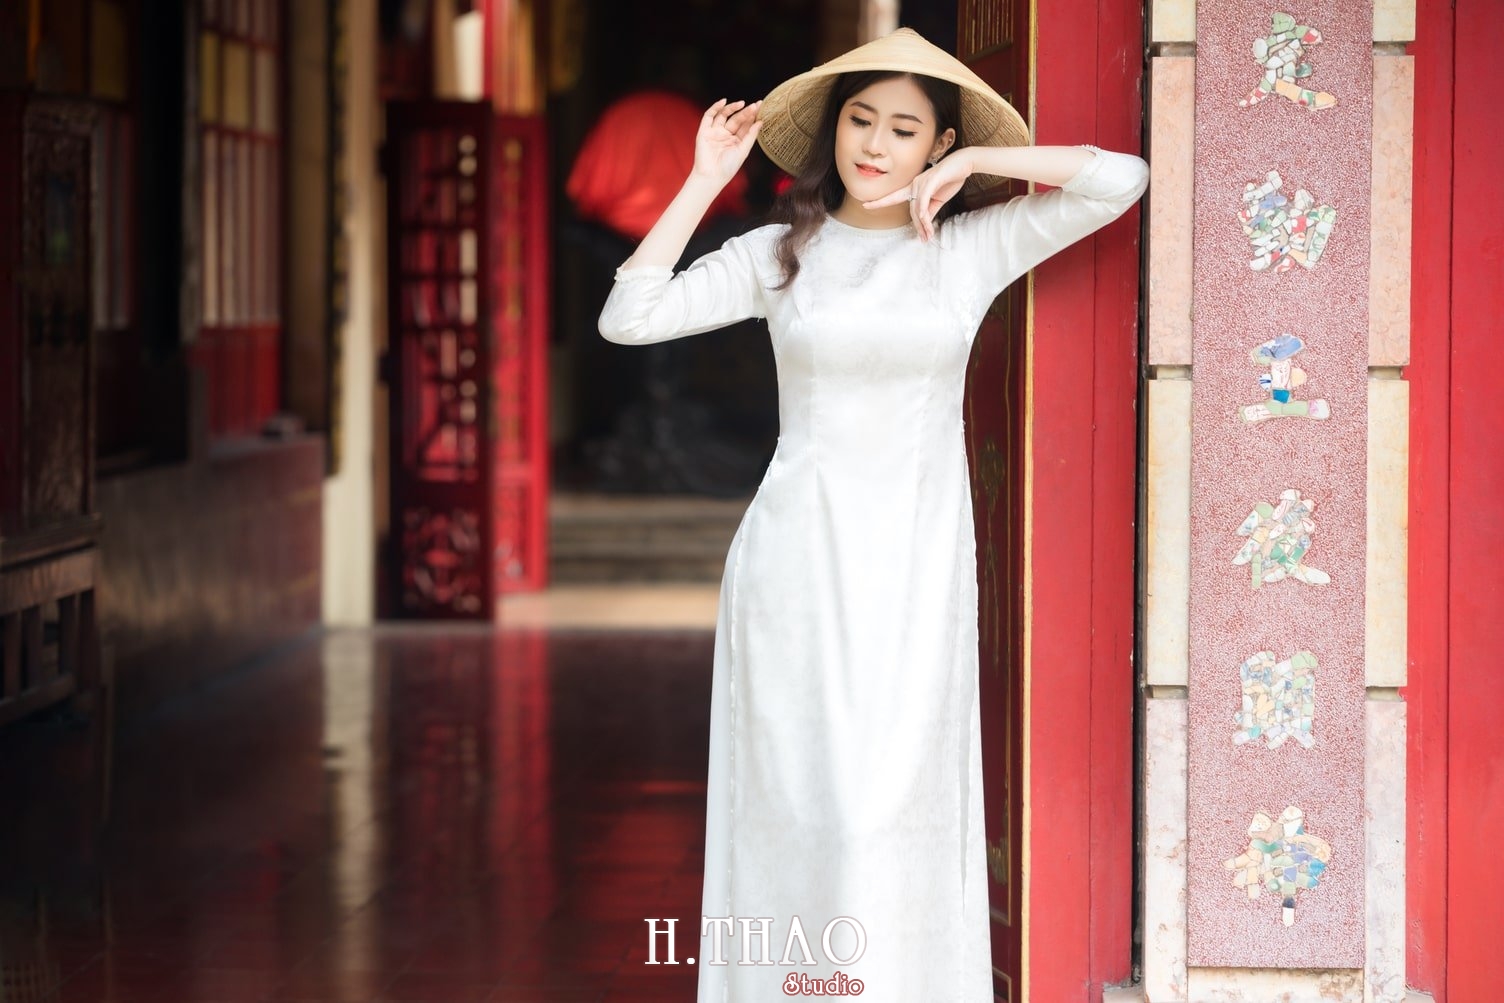 Ao dai Lang ong ba chieu 13 - 49 cách tạo dáng chụp ảnh với áo dài tuyệt đẹp - HThao Studio